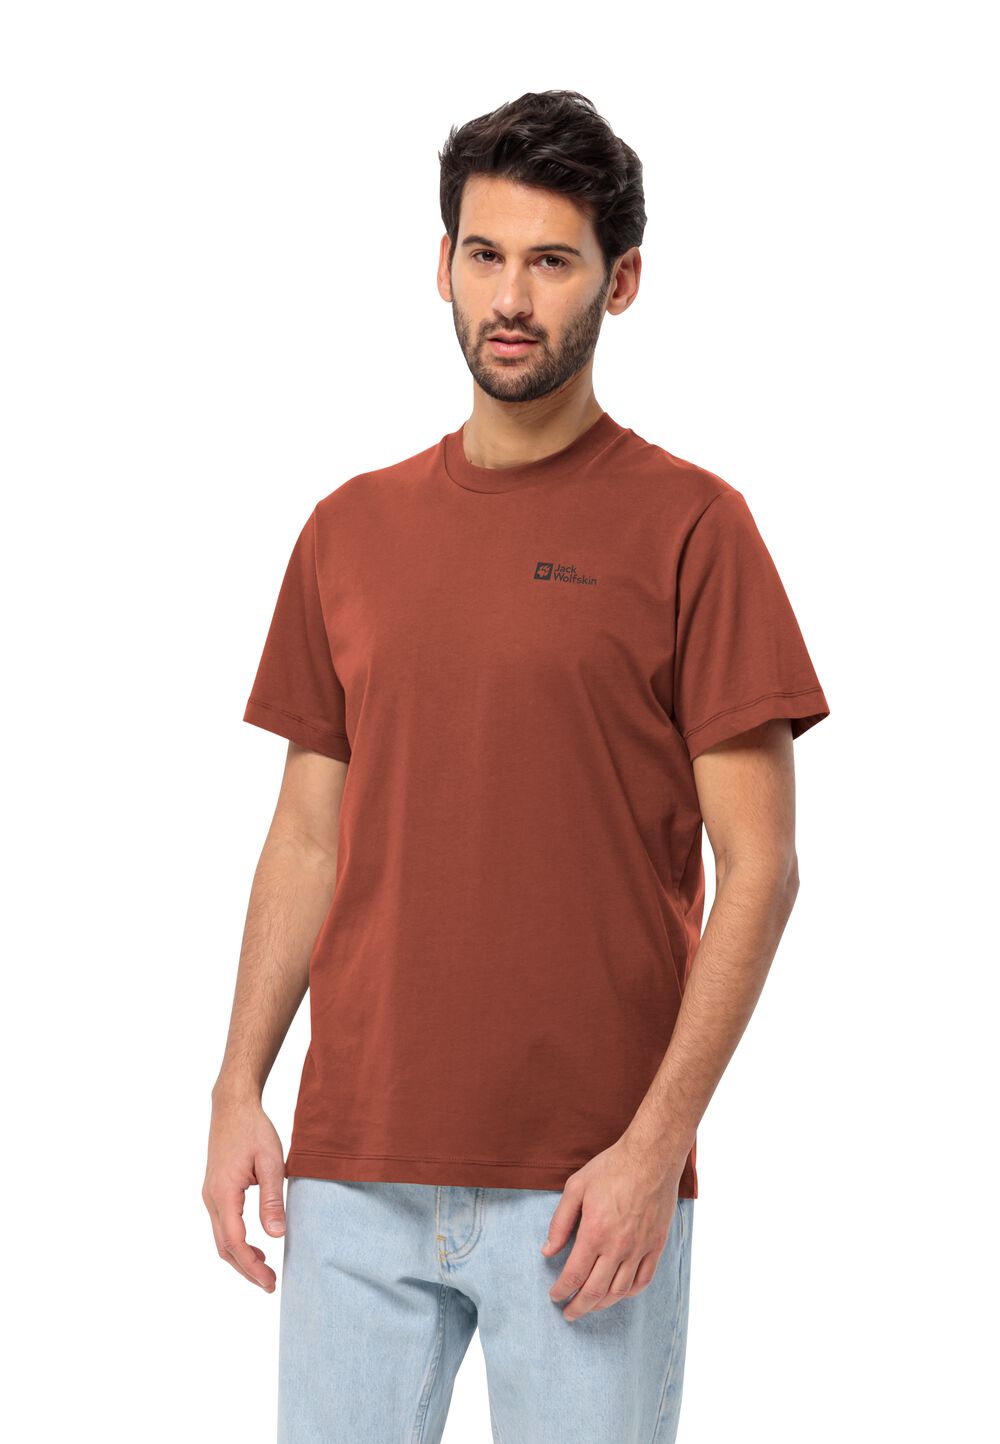 Jack Wolfskin Herren T-shirt aus Bio-Baumwolle Essential T-Shirt Men S carmine carmine von Jack Wolfskin